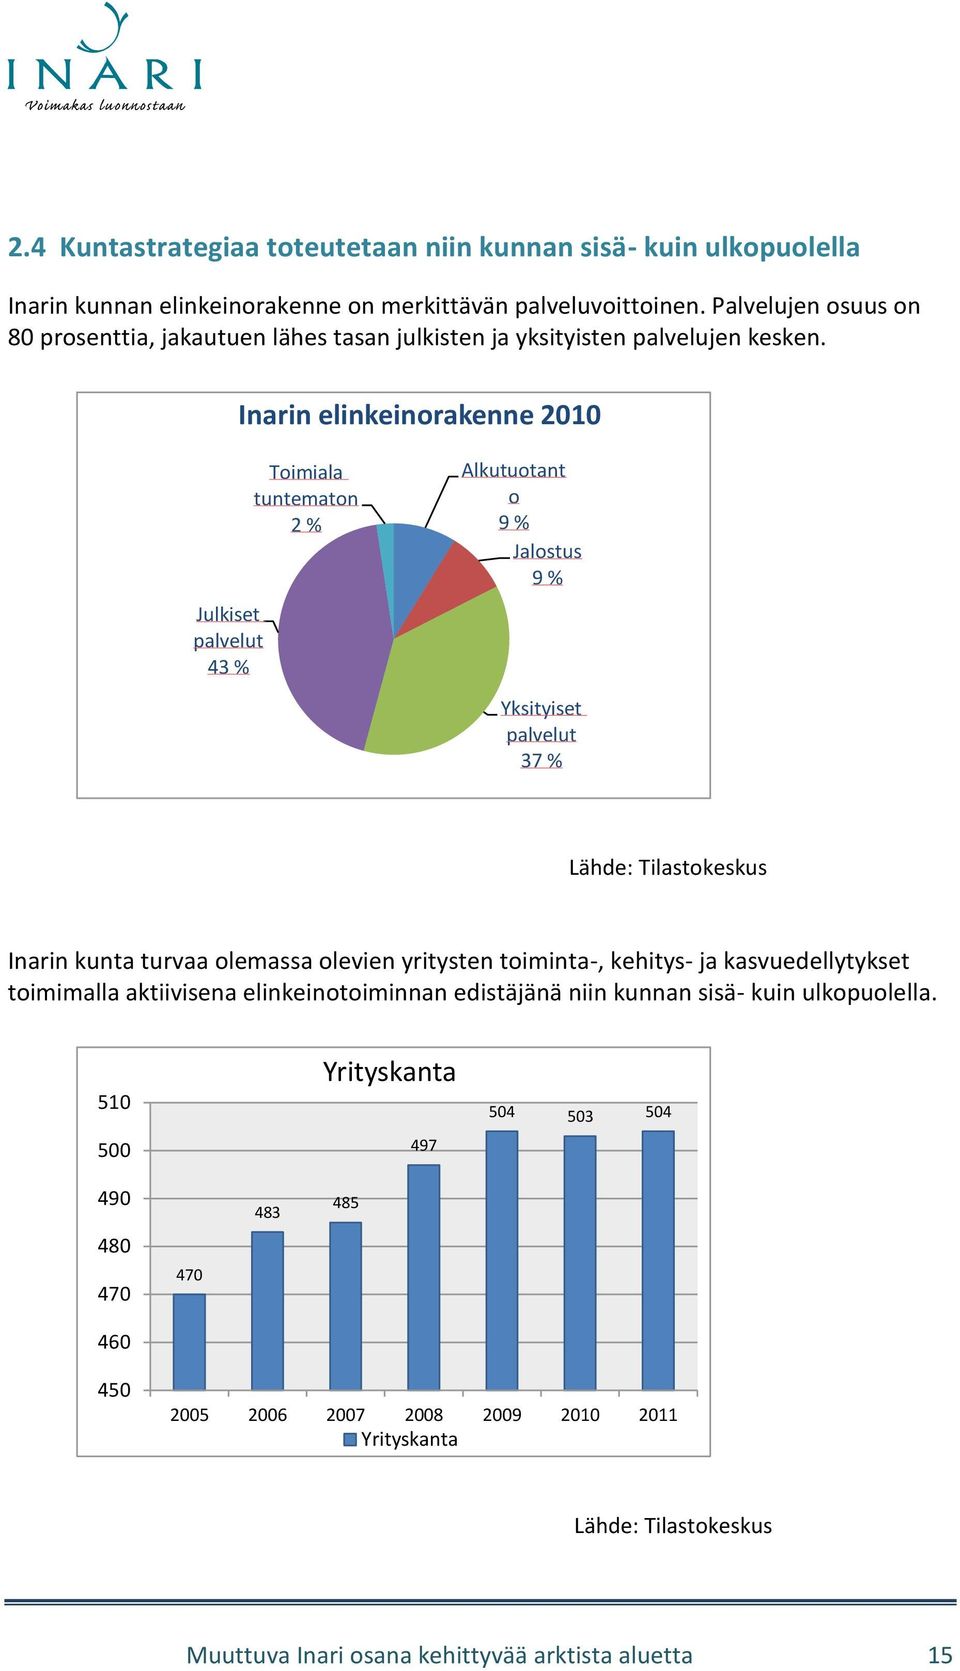 Inarin elinkeinorakenne 2010 Julkiset palvelut 43 % Toimiala tuntematon 2 % Alkutuotant o 9 % Jalostus 9 % Yksityiset palvelut 37 % Lähde: Tilastokeskus Inarin kunta turvaa olemassa